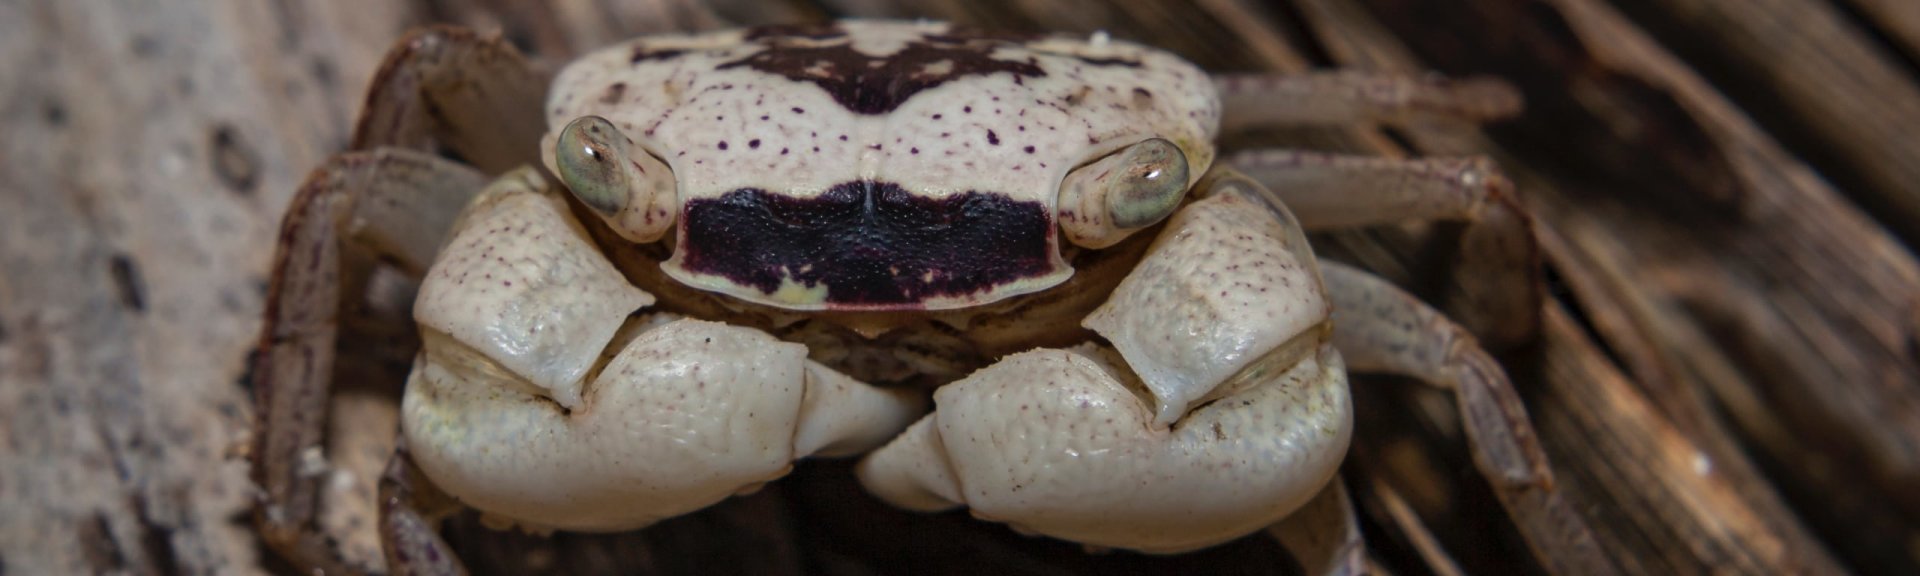 Mottled crab. Photo: [Wondrous World Images](https://www.wondrousworldimages.com.au)